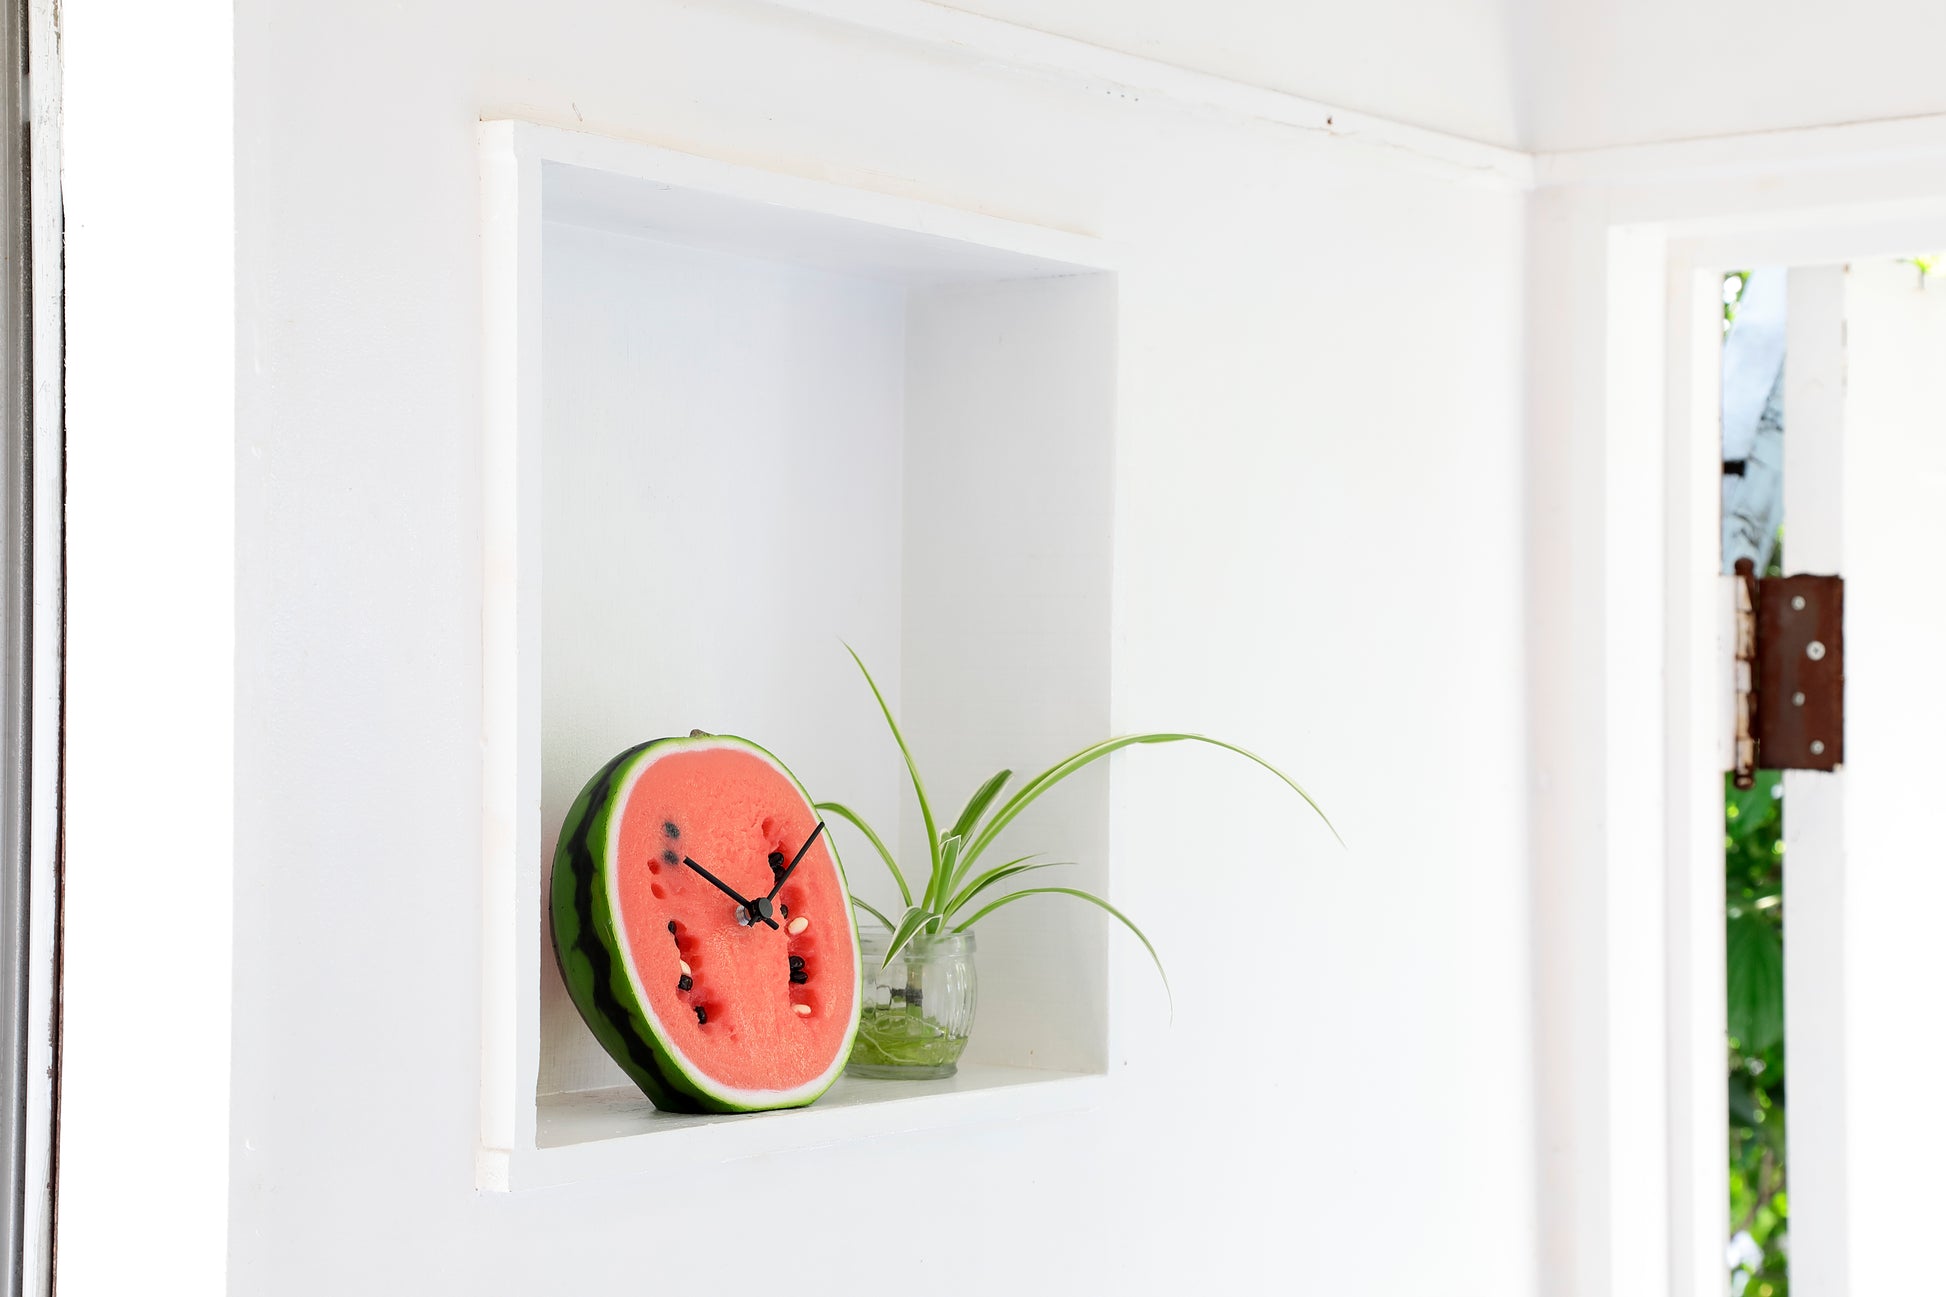 これは元祖食品サンプル屋「Replica Food Clock スイカ 」の玄関に置いたイメージ写真です。